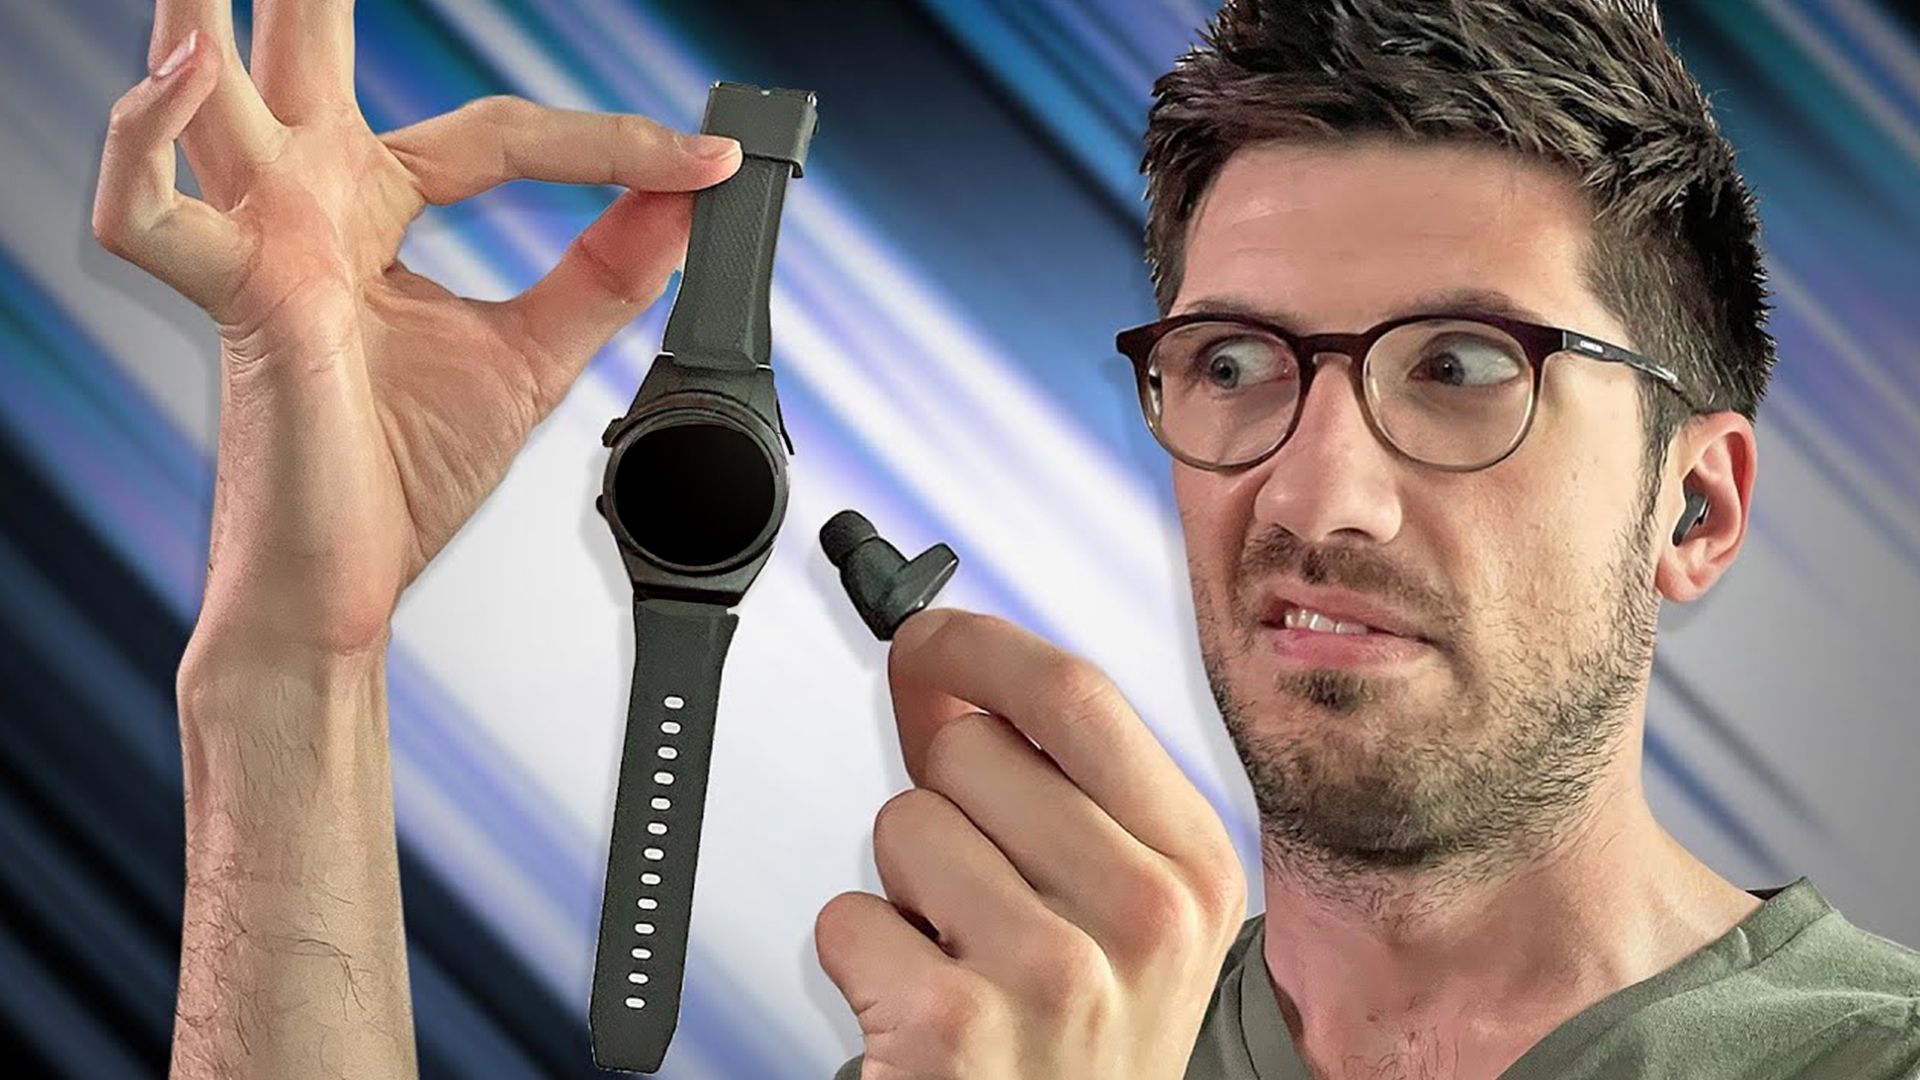 Die SCHLECHTESTE Smartwatch ever?! - Wearbuds 3